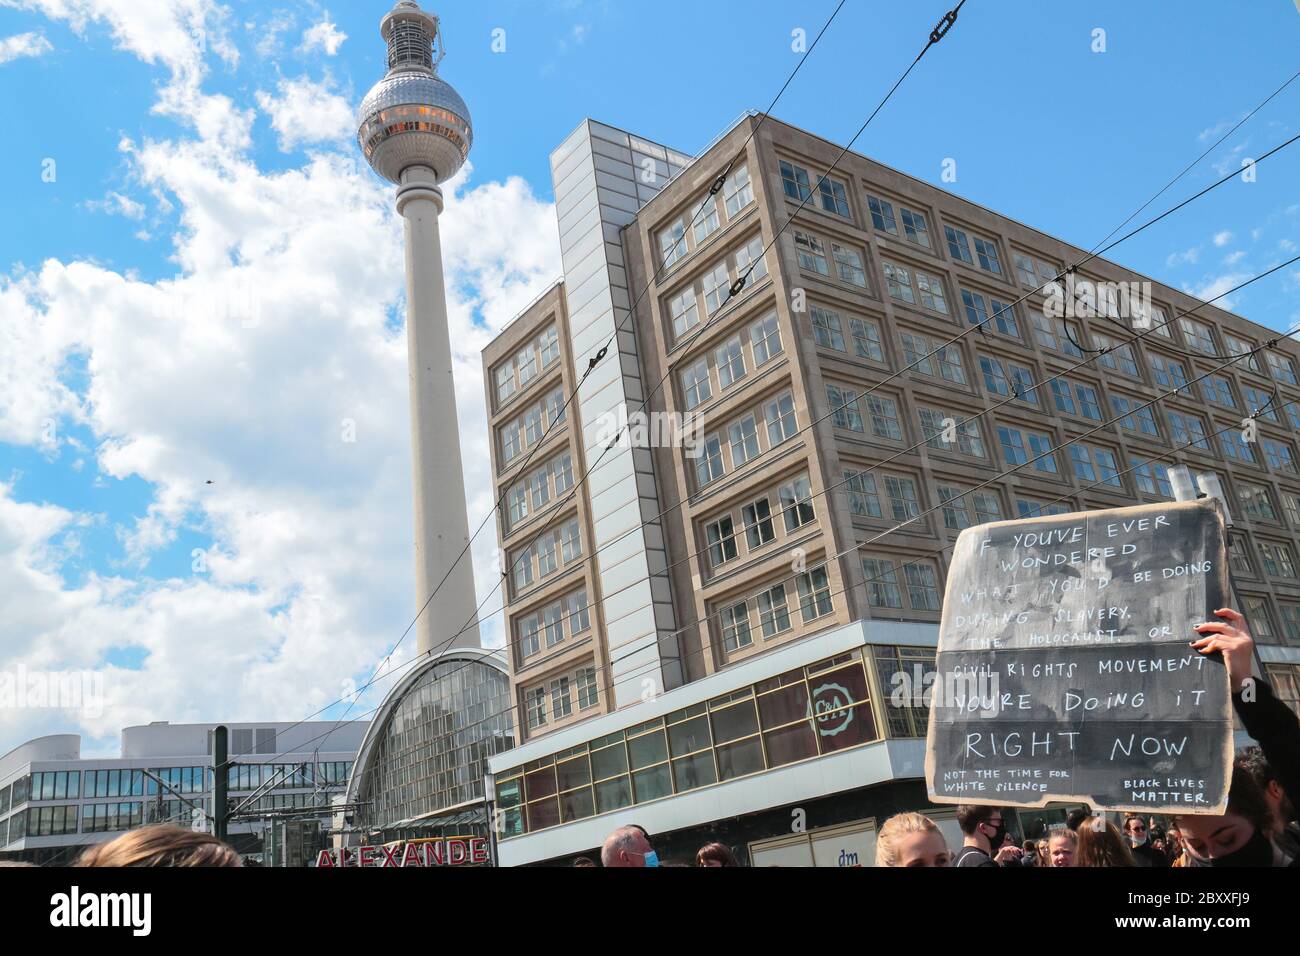 Schild über weiße Verantwortung bei einem Black Lives Matter Protest am Alexanderplatz Berlin, Deutschland, nach dem Tod von George Floyd. Stockfoto